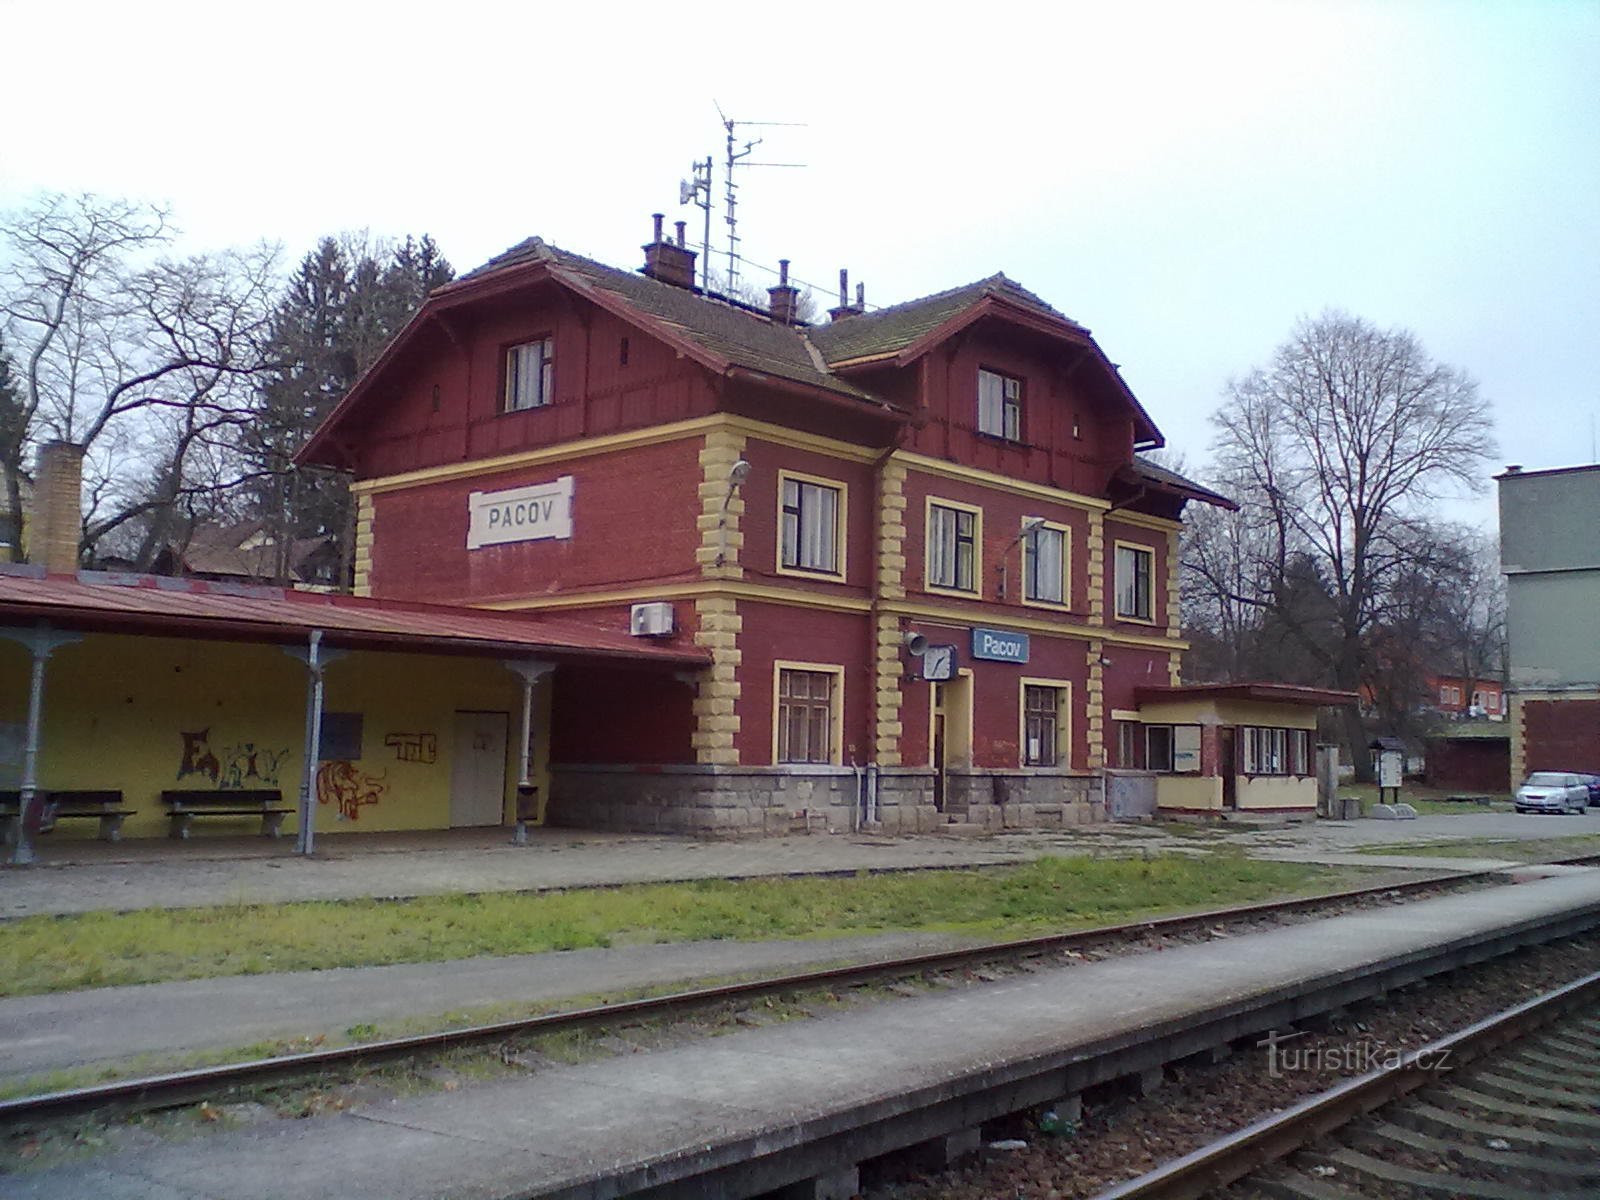 1. パコフの鉄道駅 - 巡礼の始点と終点。